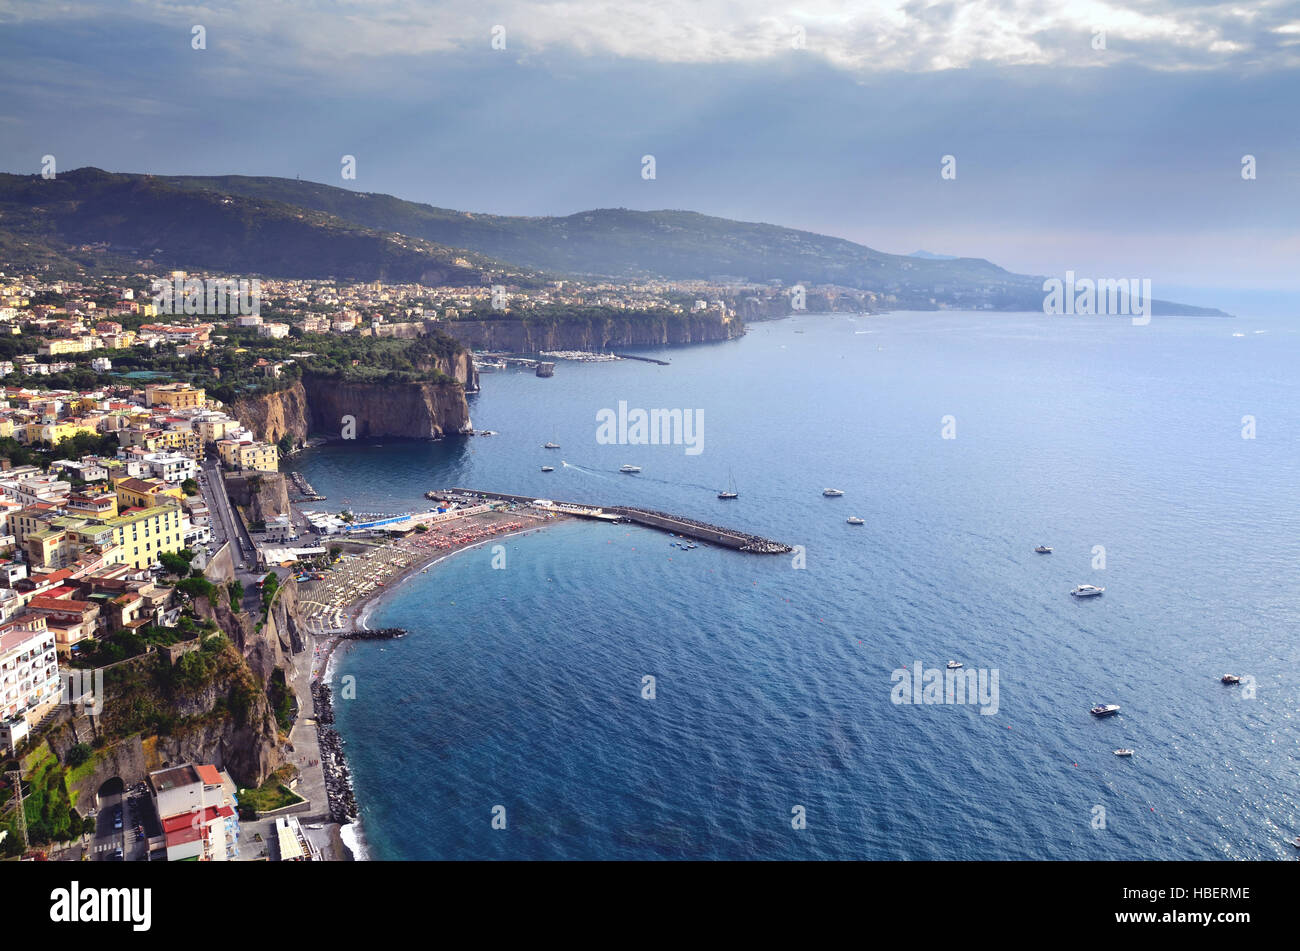 The Sorrento Peninsula, Italy Stock Photo - Alamy